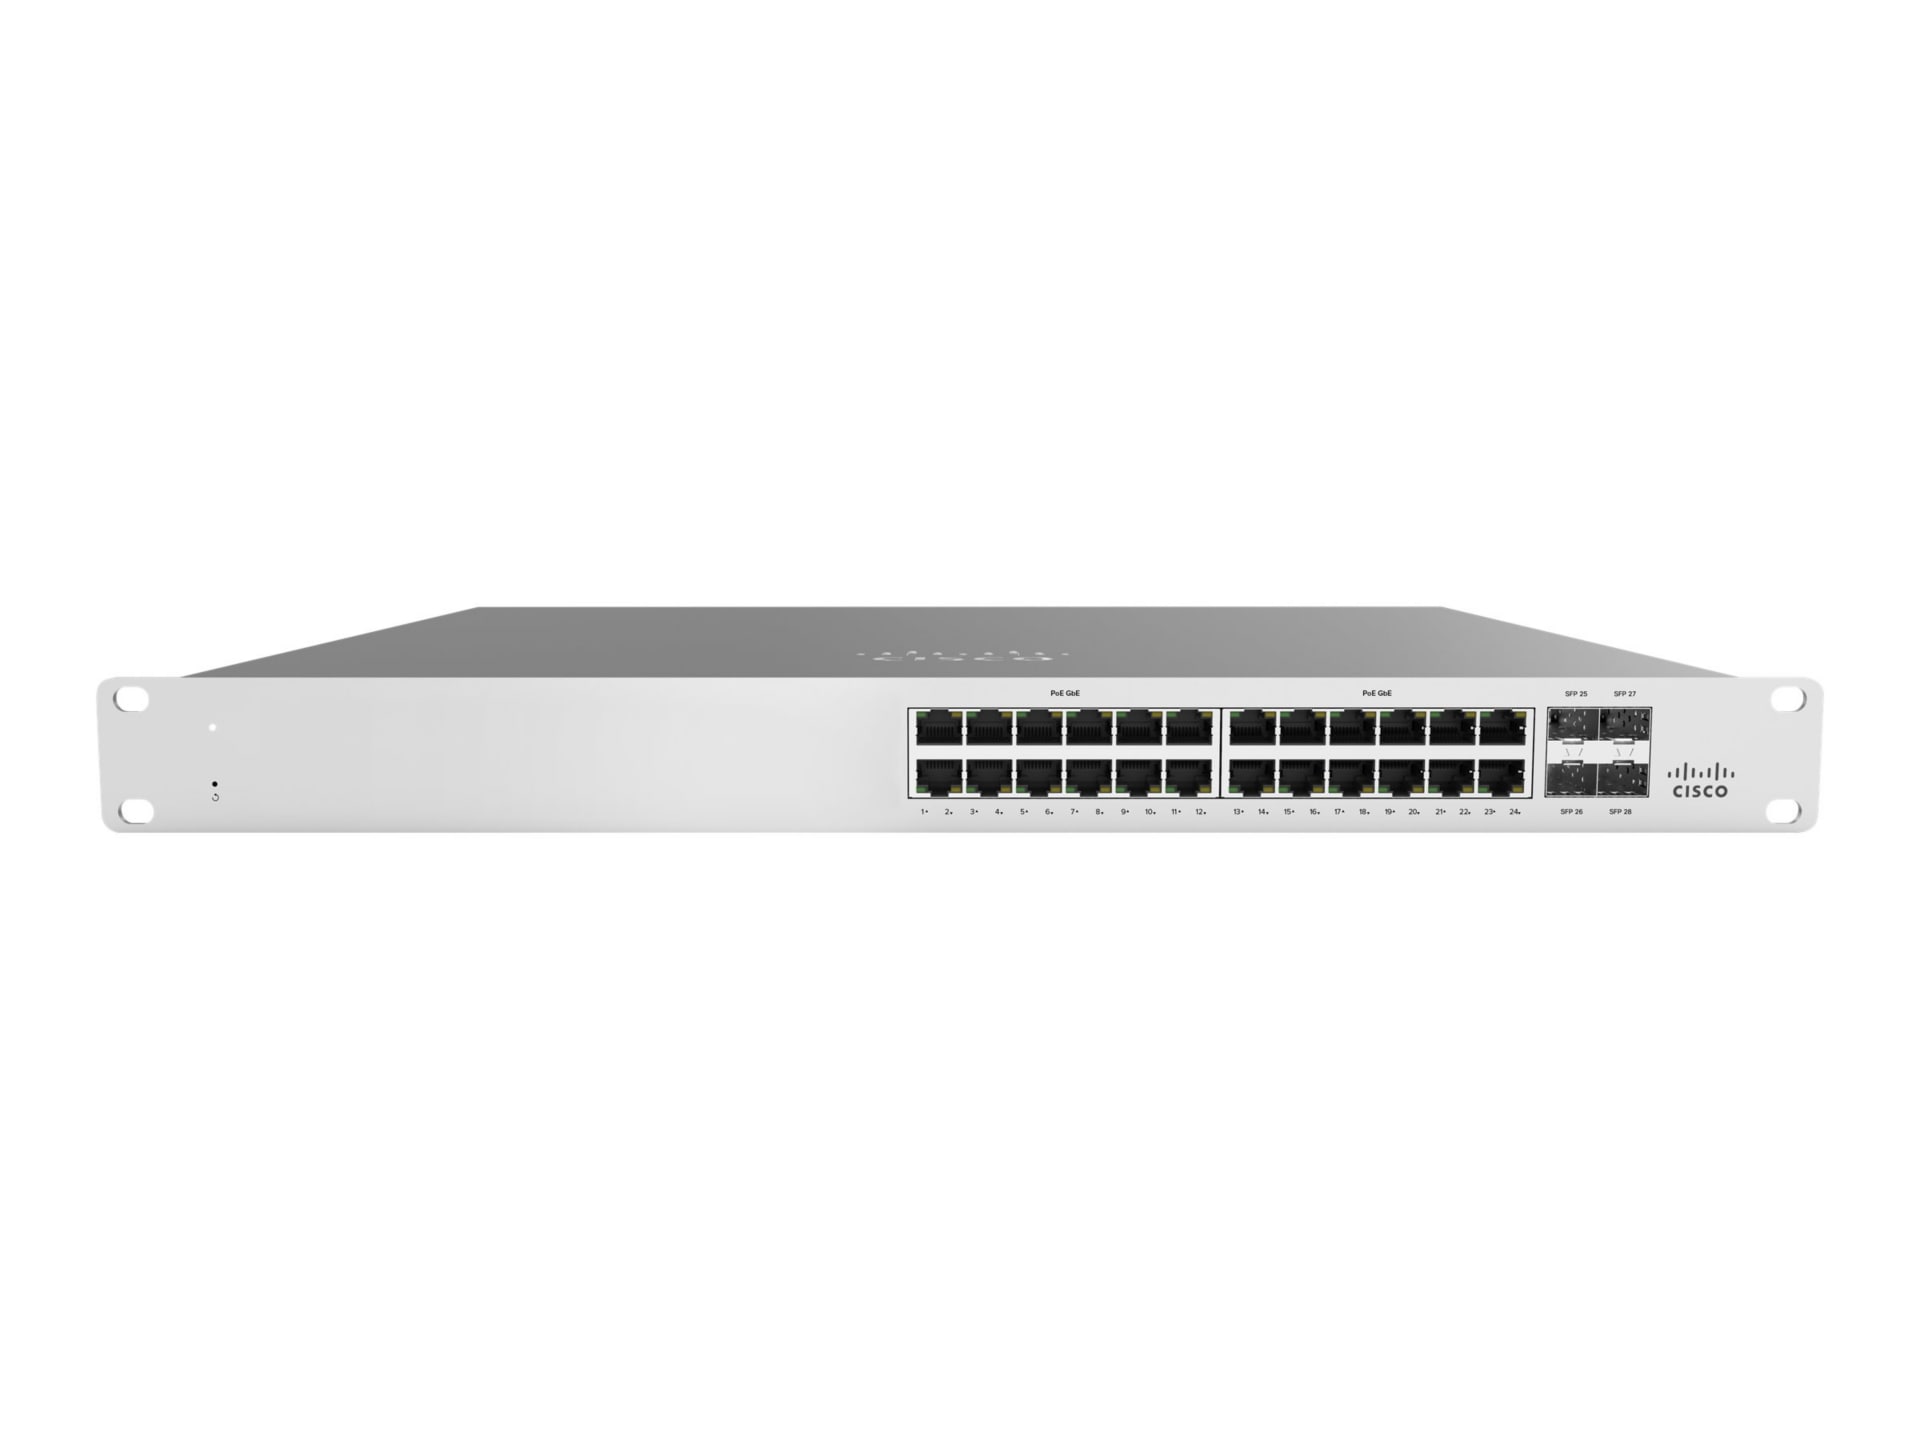 Cisco Meraki Cloud Managed MS120-24 - switch - 24 ports - managed - rack-mountable